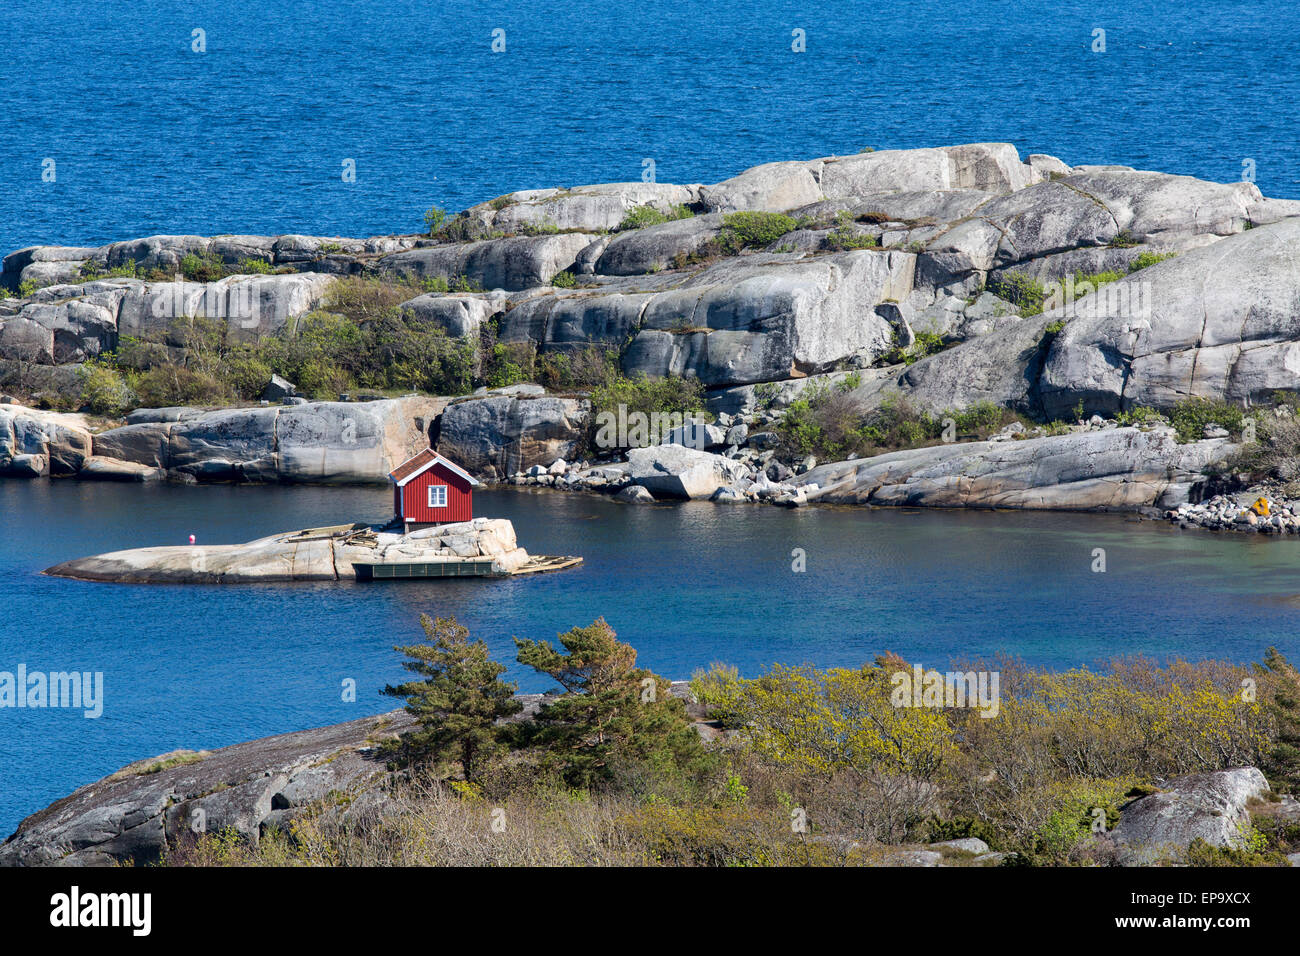 Joli petit rouge sur une petite île de Norvège Banque D'Images